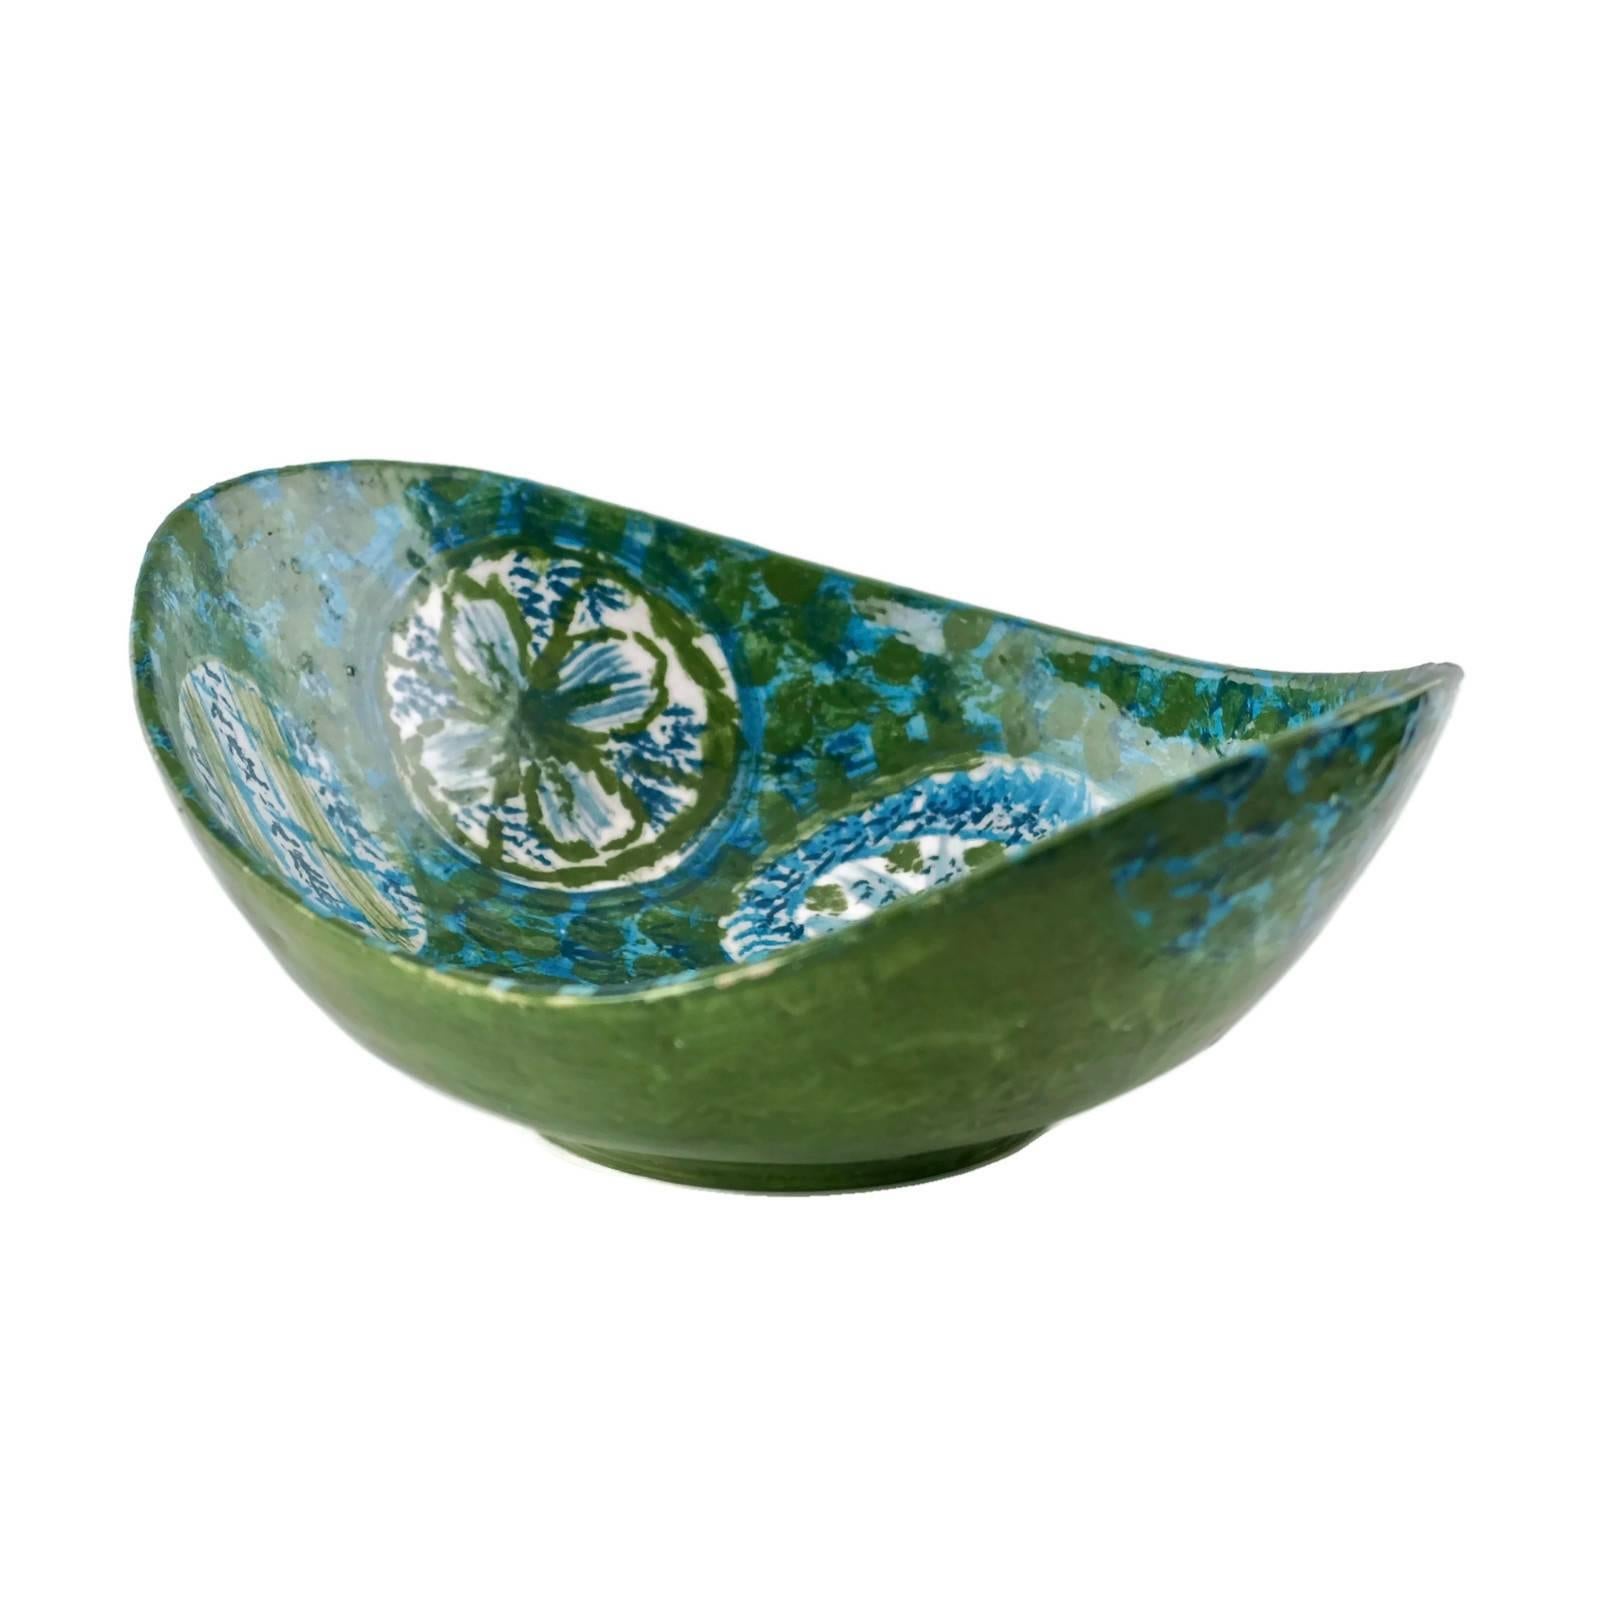 Diese ungewöhnliche Keramikschale wurde in Italien für den amerikanischen Importeur Raymor hergestellt. Das Stück hat eine längliche Schaufelform und wurde in Blau- und Grüntönen handbemalt. Das schwammige Innere weist sechs eiförmige Formen auf,